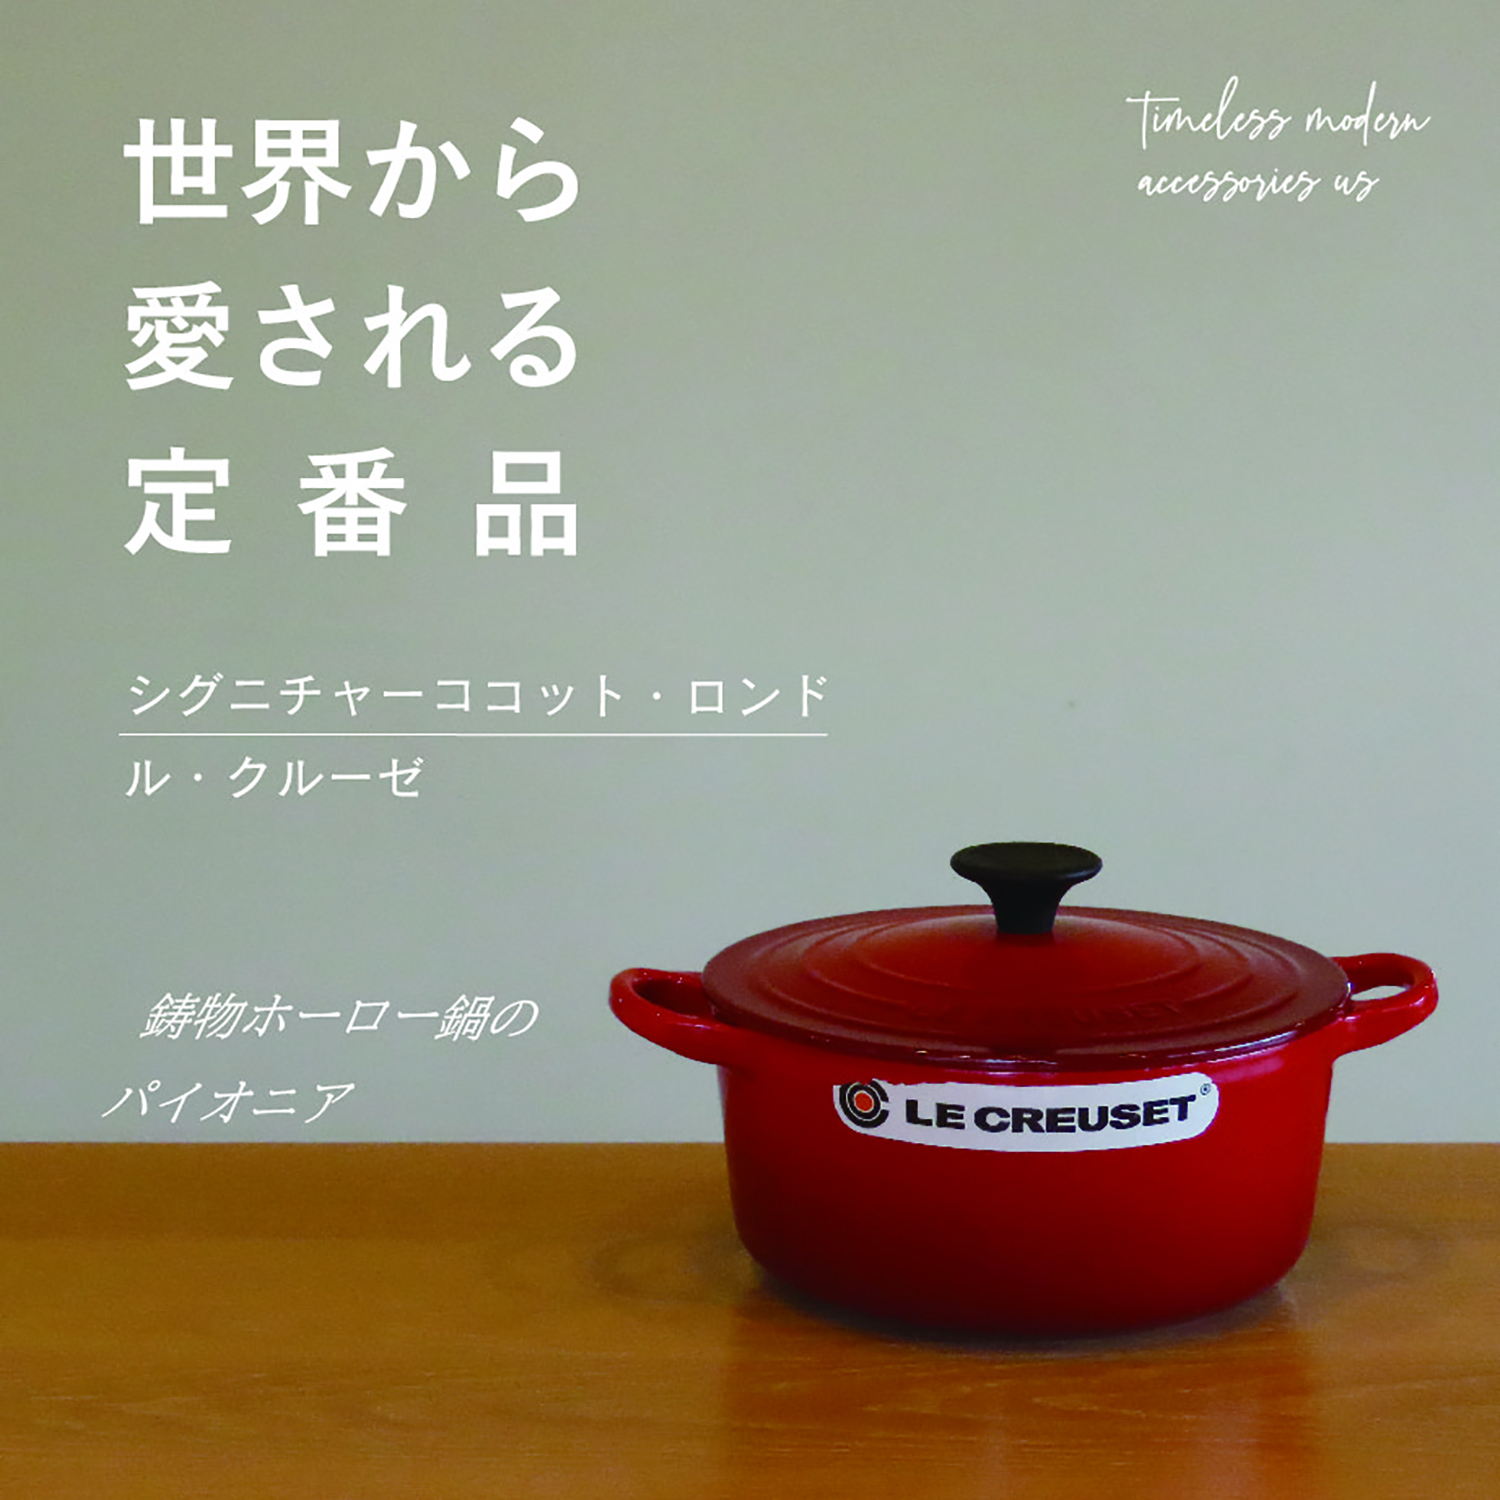 【国内在庫】LE CREUSETシグニチャーココット・ロンド/チェリーレッド 22cm/鍋 調理器具